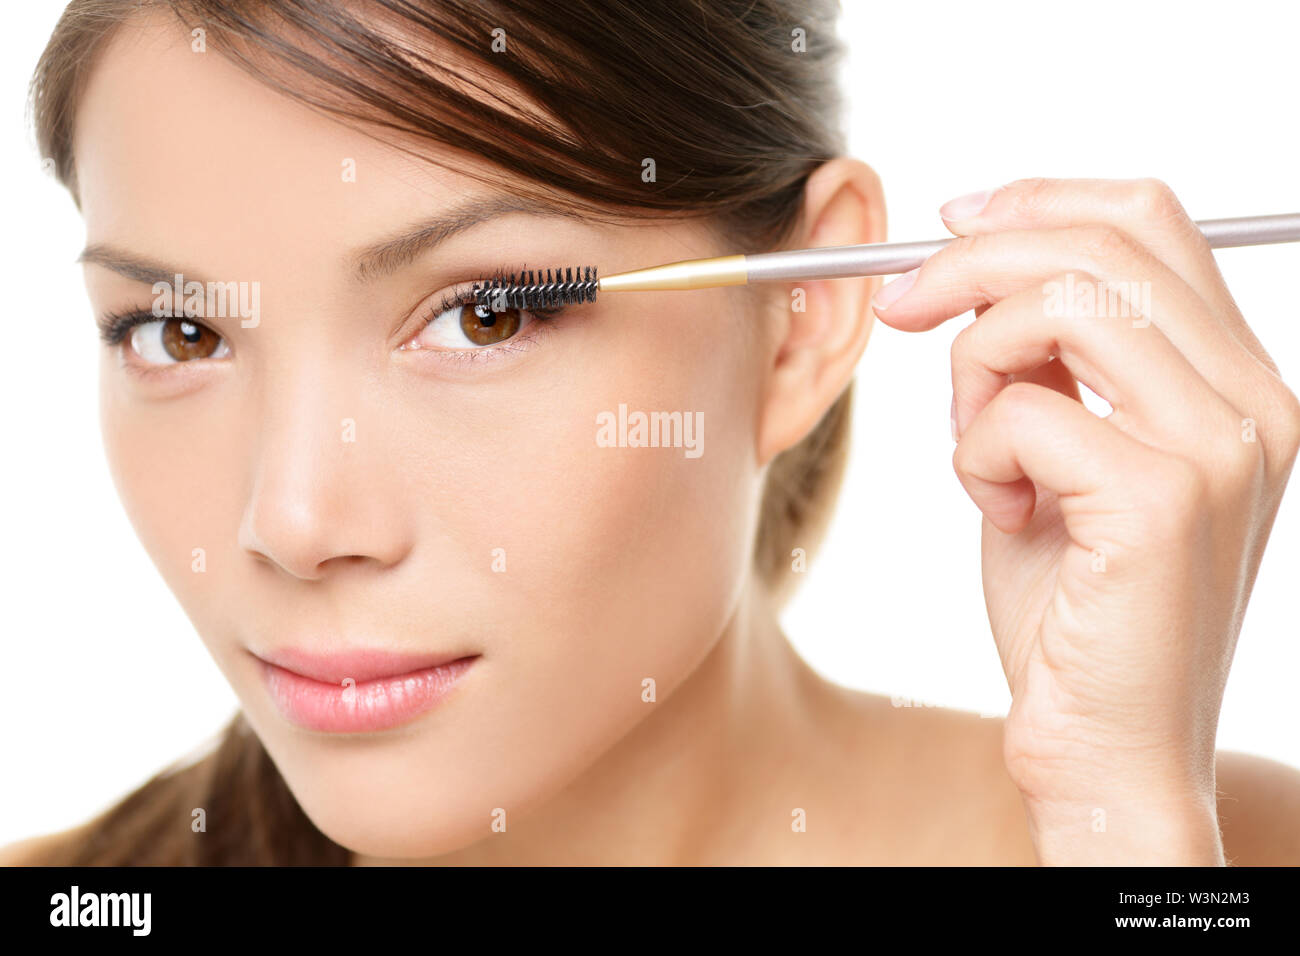 Wimperntusche woman putting Makeup auf die Augen. Asiatische Frau Modell Gesicht Nahaufnahme mit Auge Pinsel auf Wimpern. Stockfoto